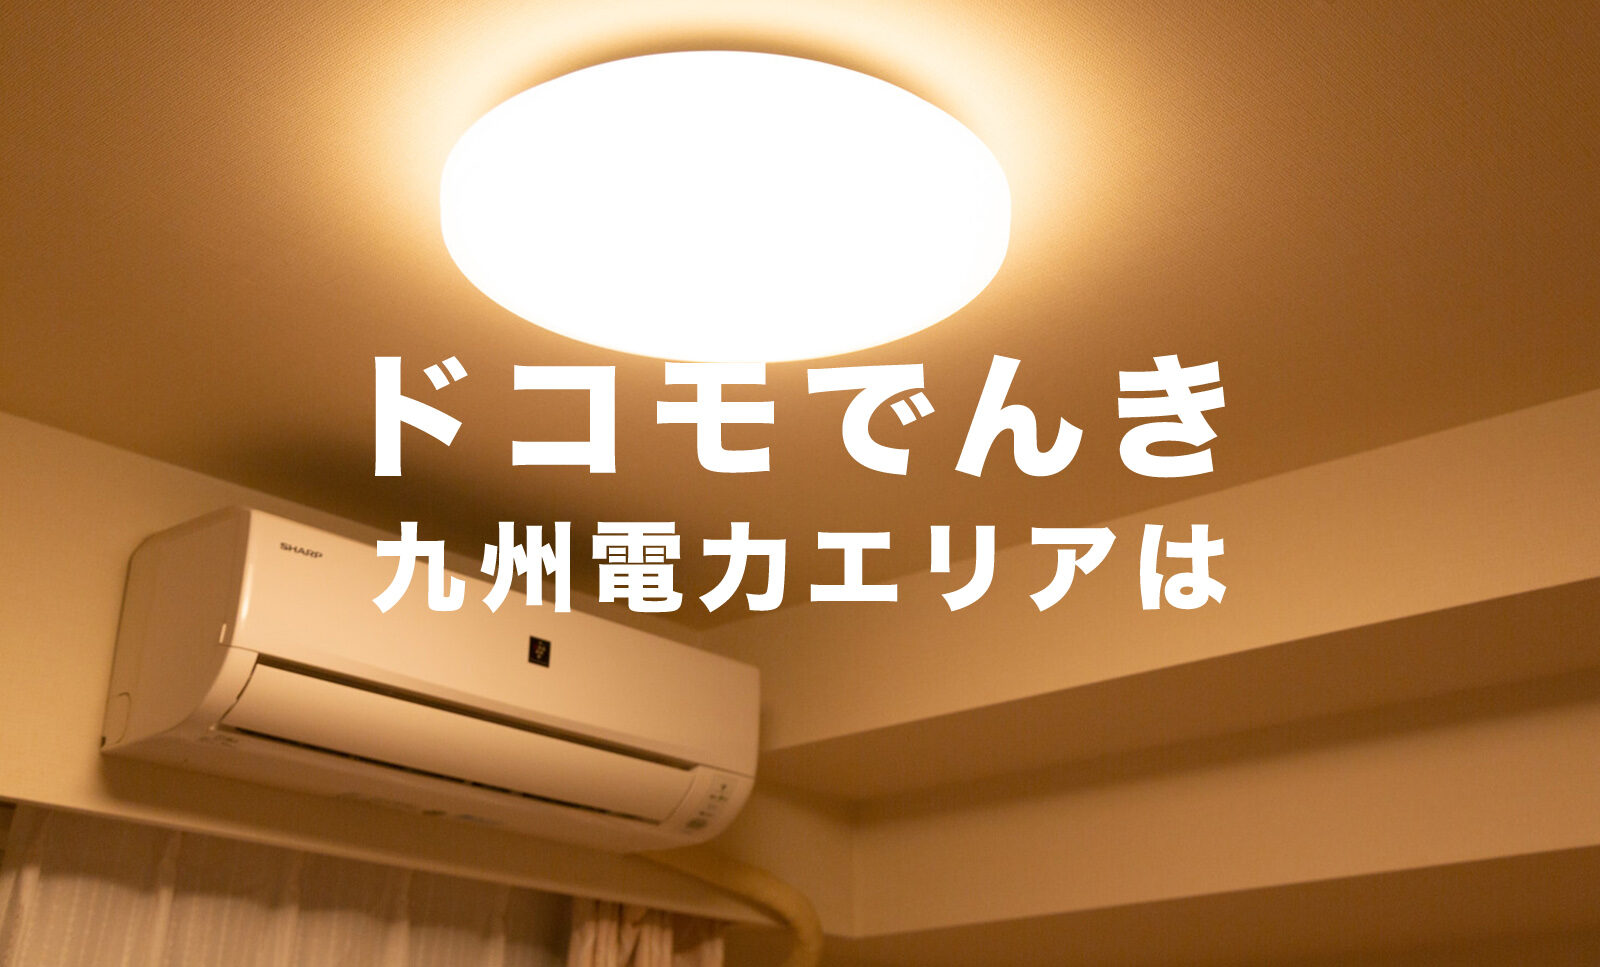 ドコモでんきの電気は九州電力エリアで契約&利用することができる？のサムネイル画像